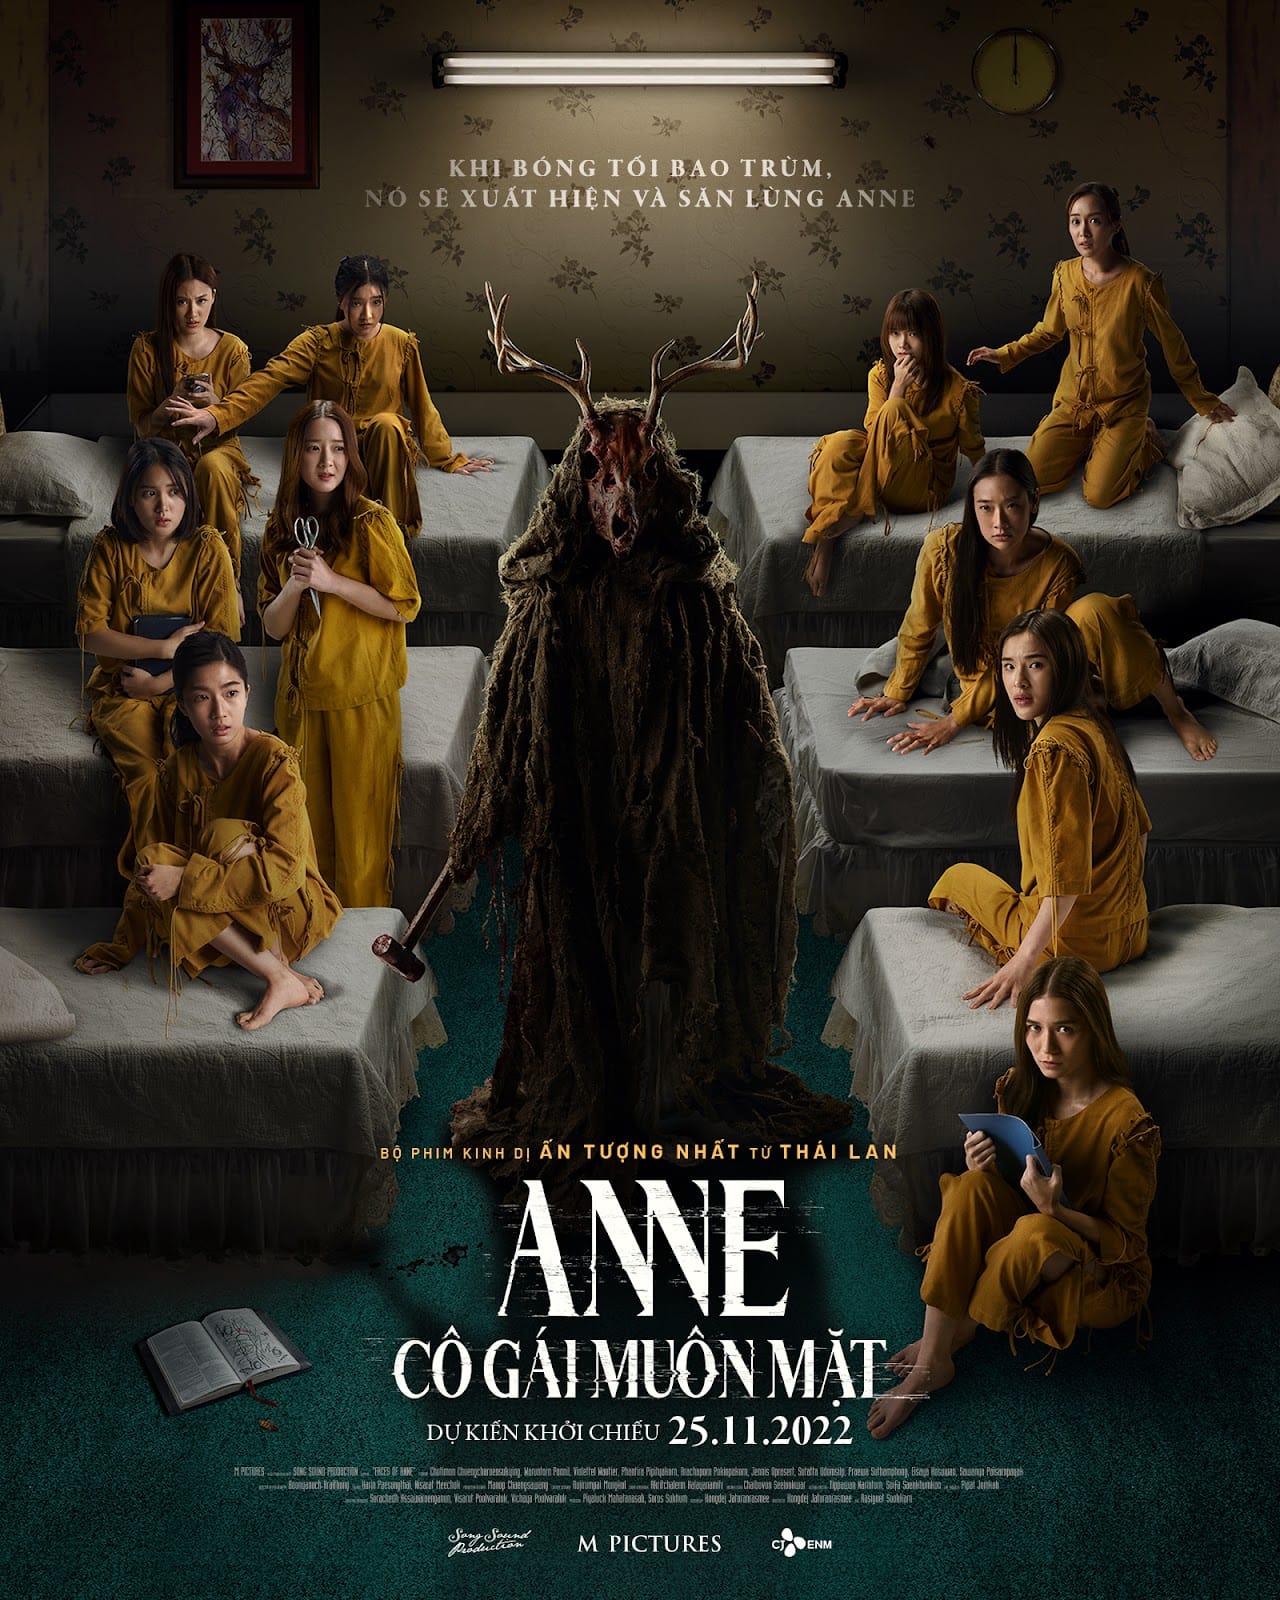 Faces of Anne (2022) - Also known as "Anne: Cô Gái Muôn M?t"